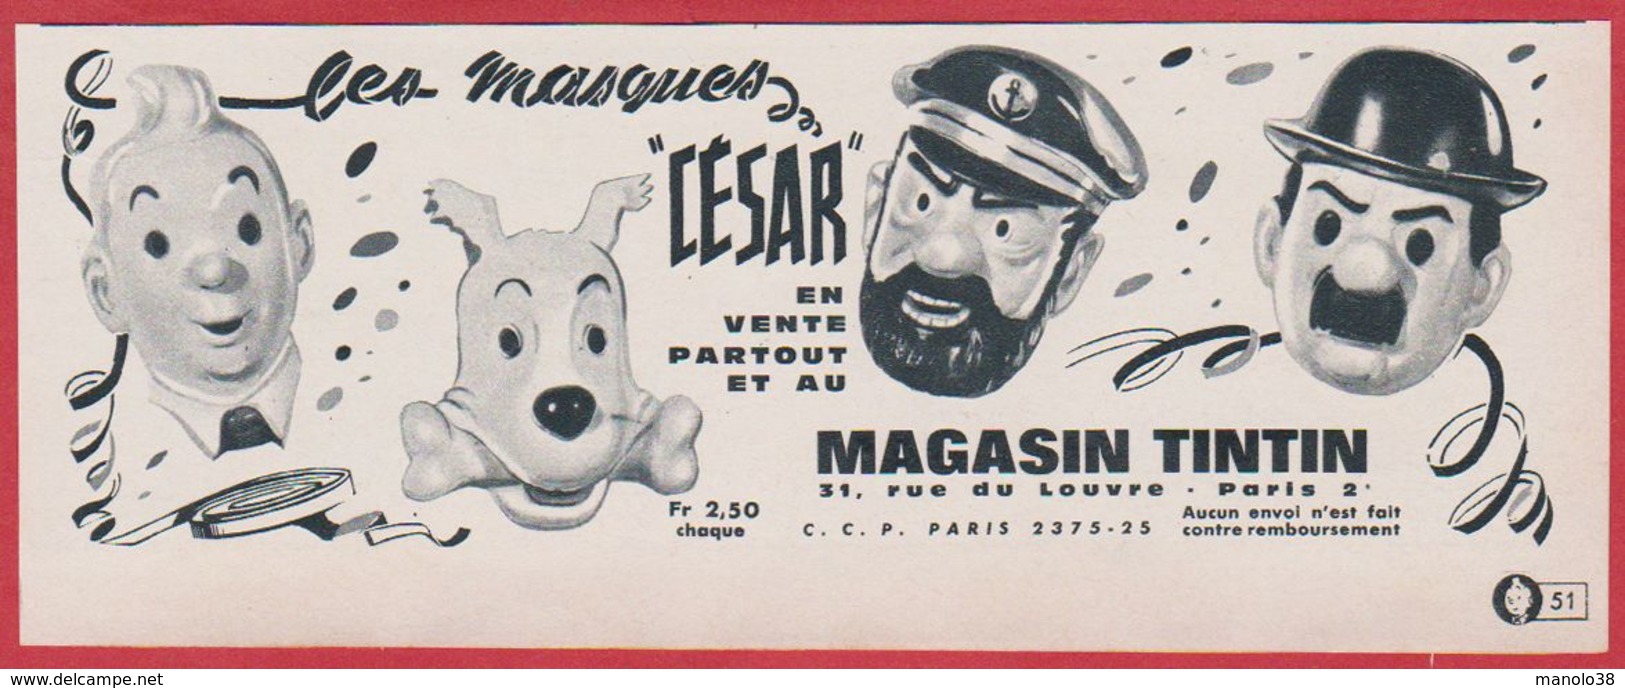 Les Masques " César ". Tintin, Milou, Le Capitaine Haddock, Dupont. Masque Enfant.  1965. - Publicités